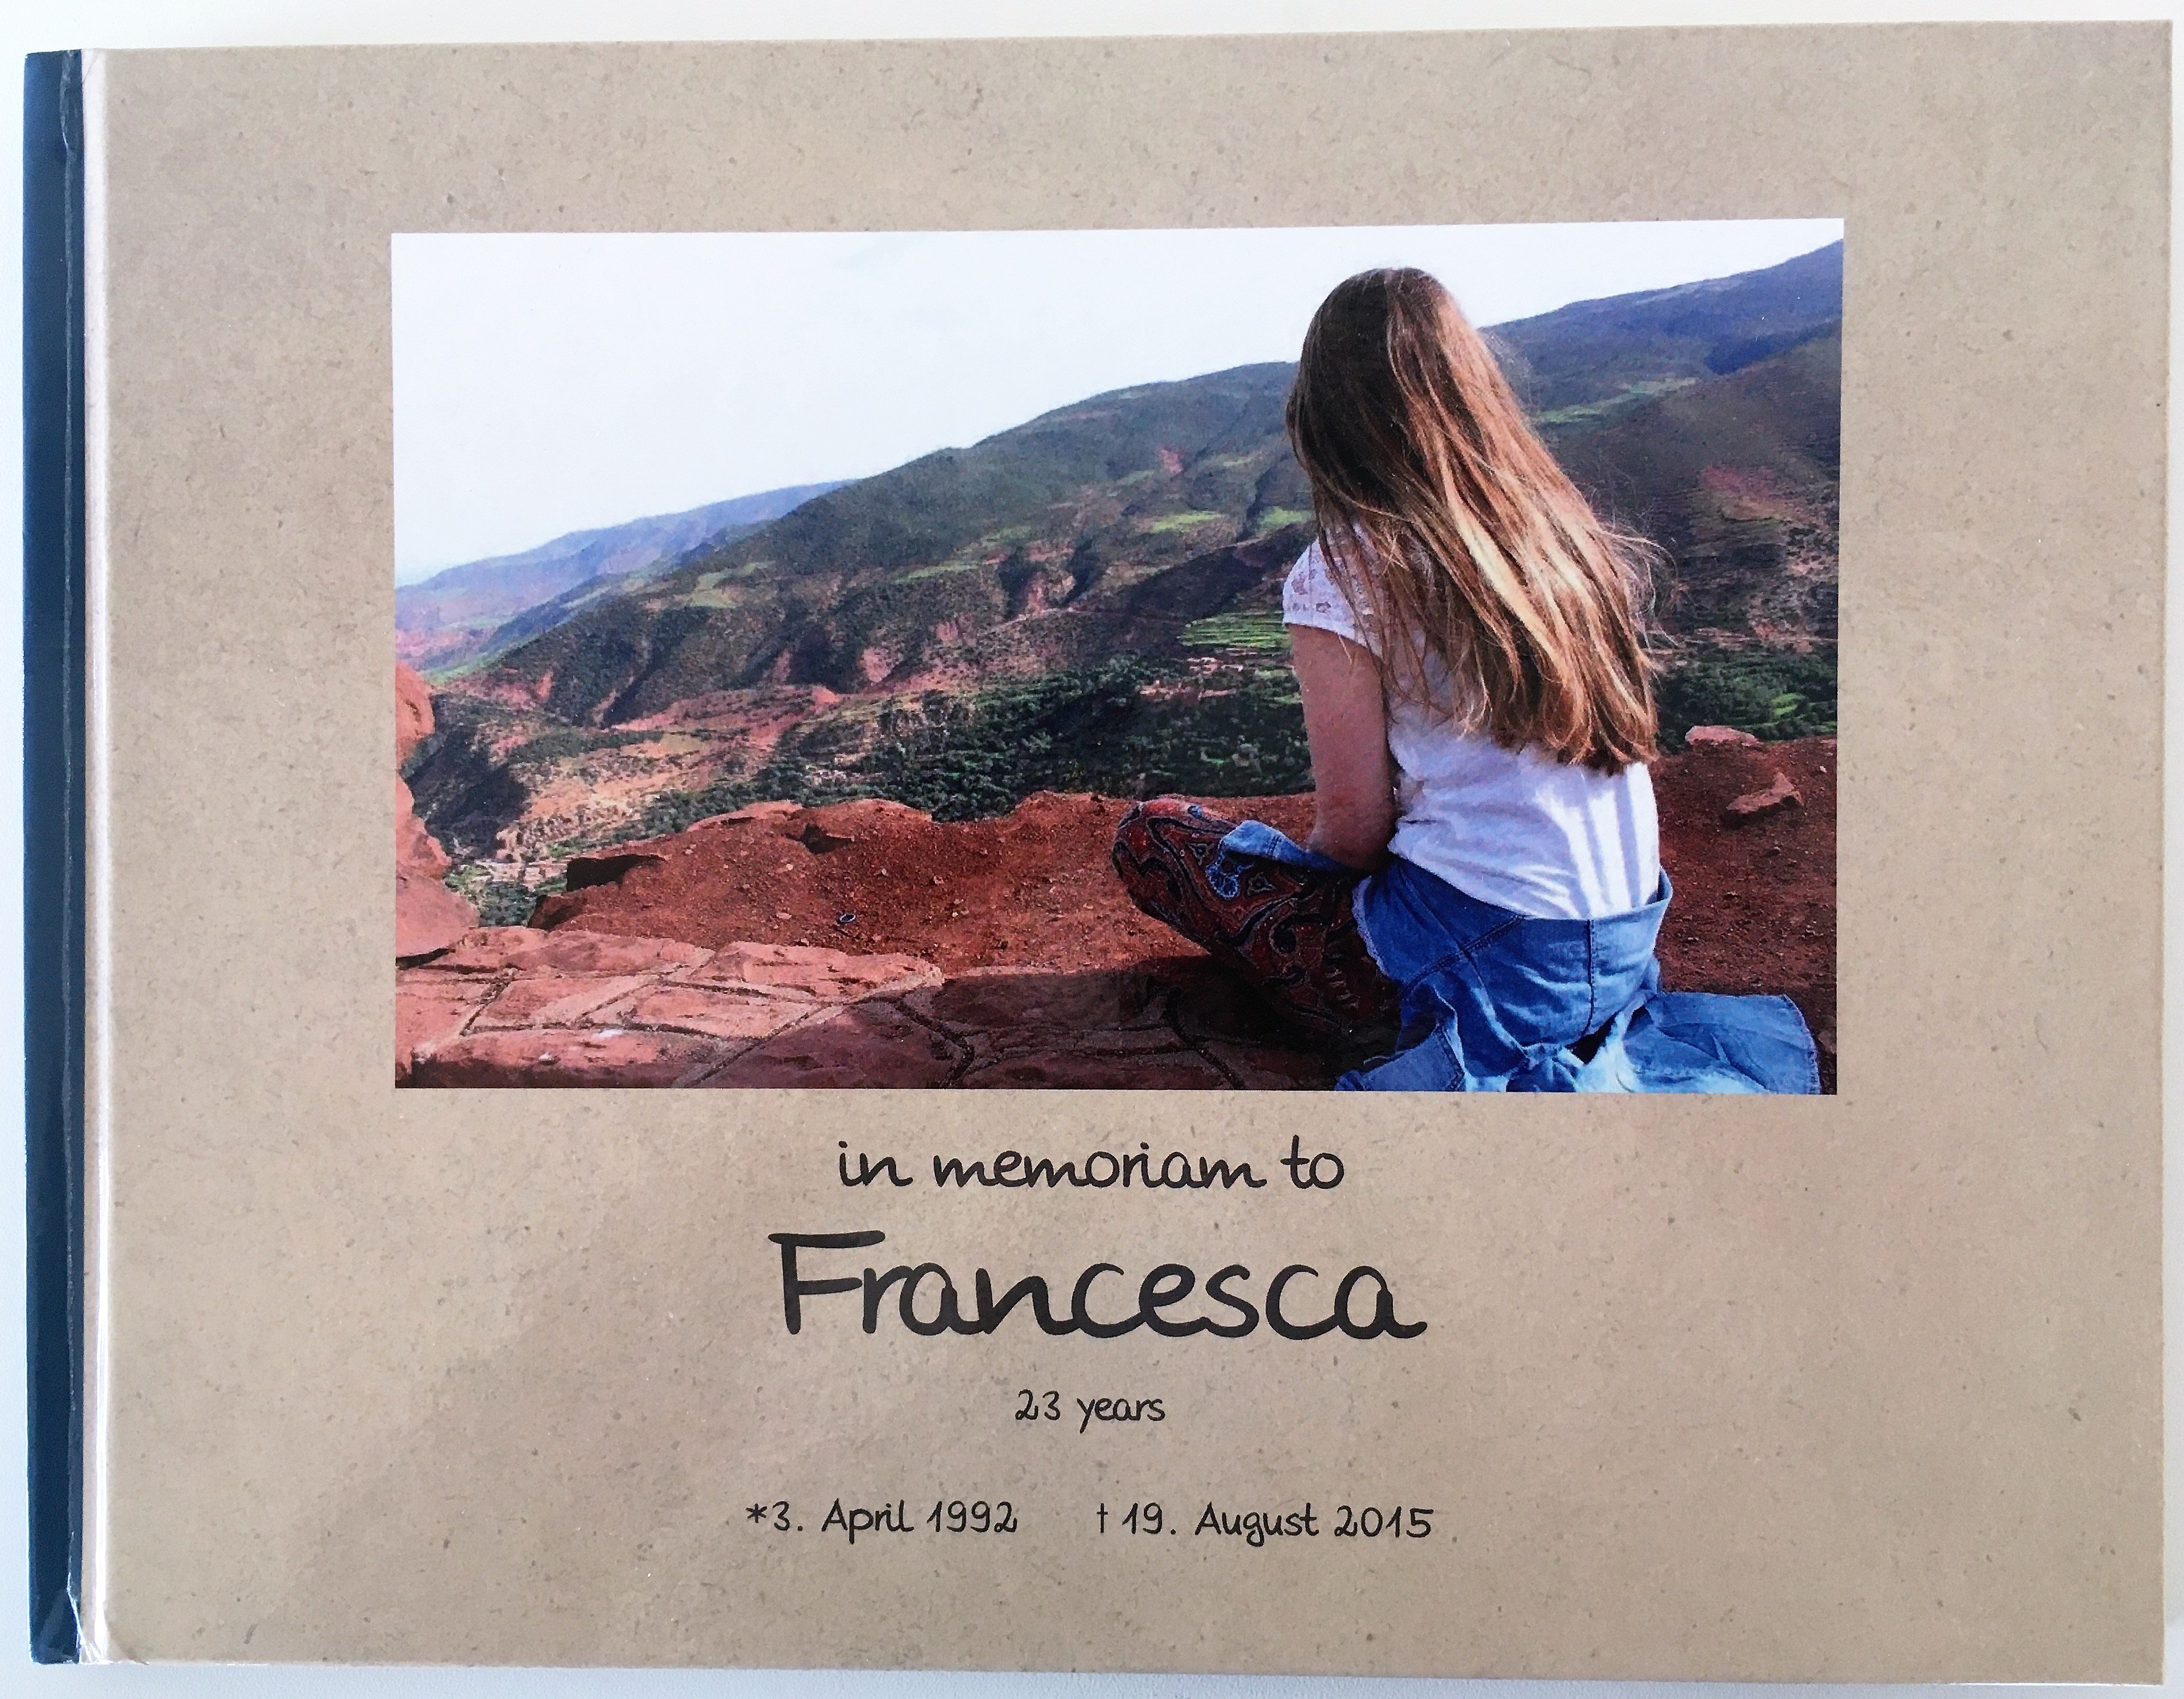 Erinnerungsalbum "In memoriam to Francesca" (Museum für Sepulkralkultur CC BY)